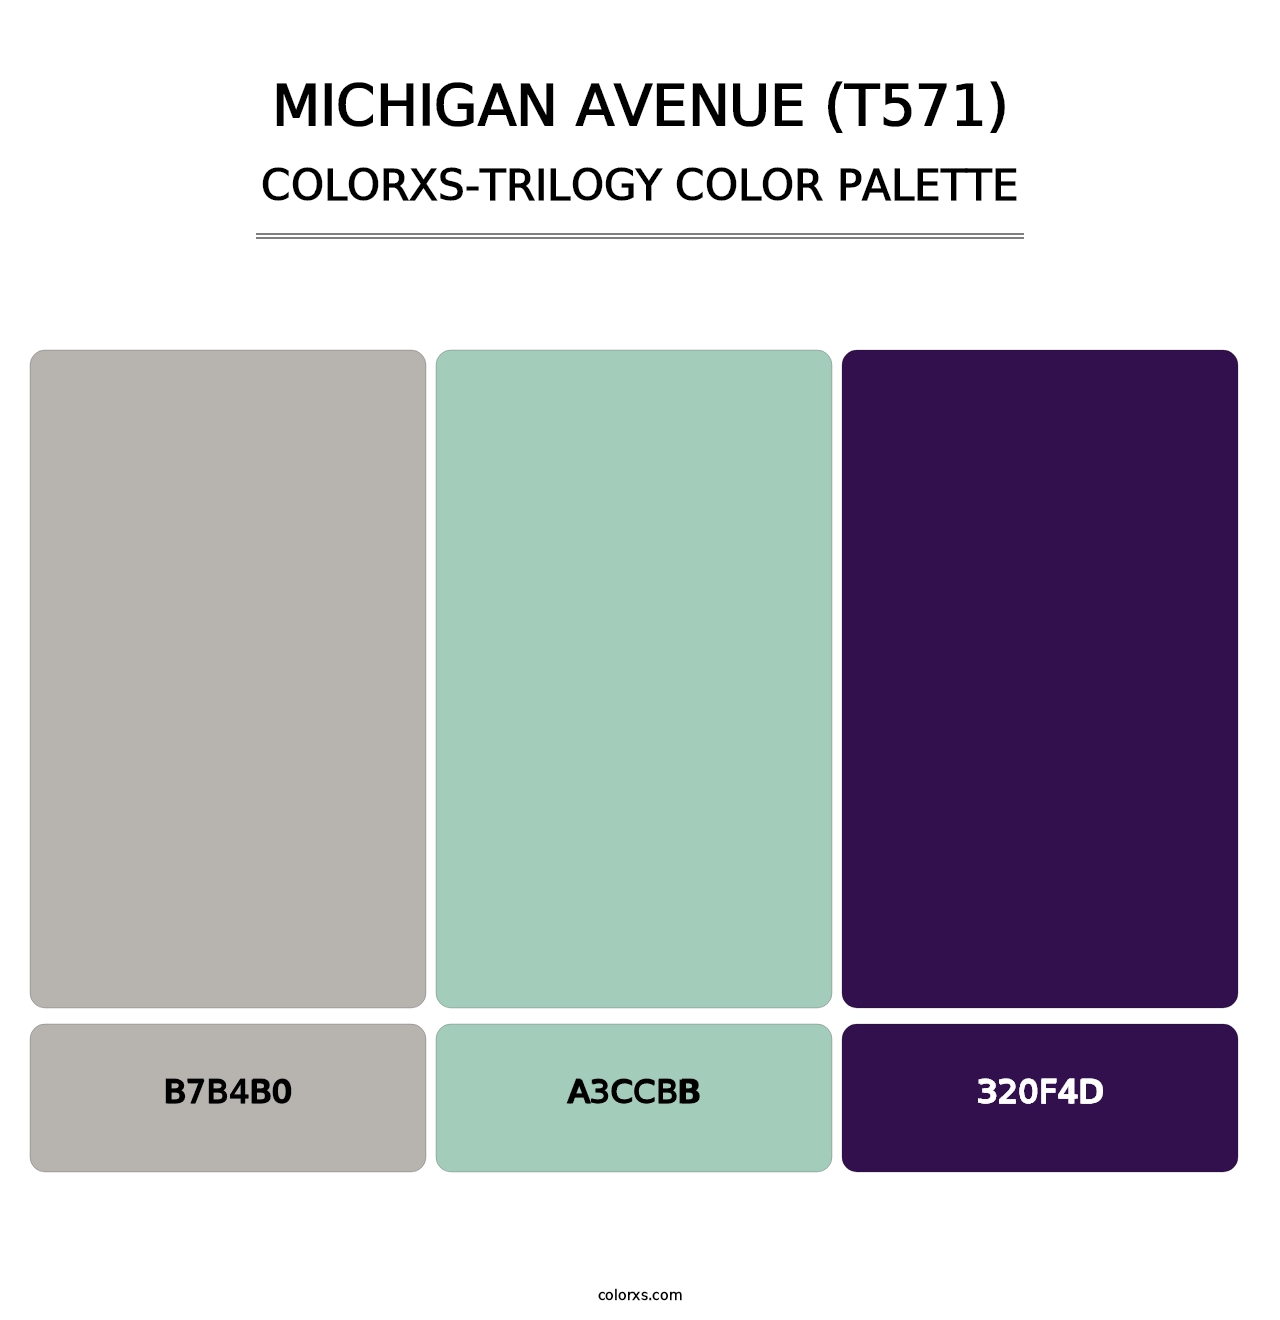 Michigan Avenue (T571) - Colorxs Trilogy Palette